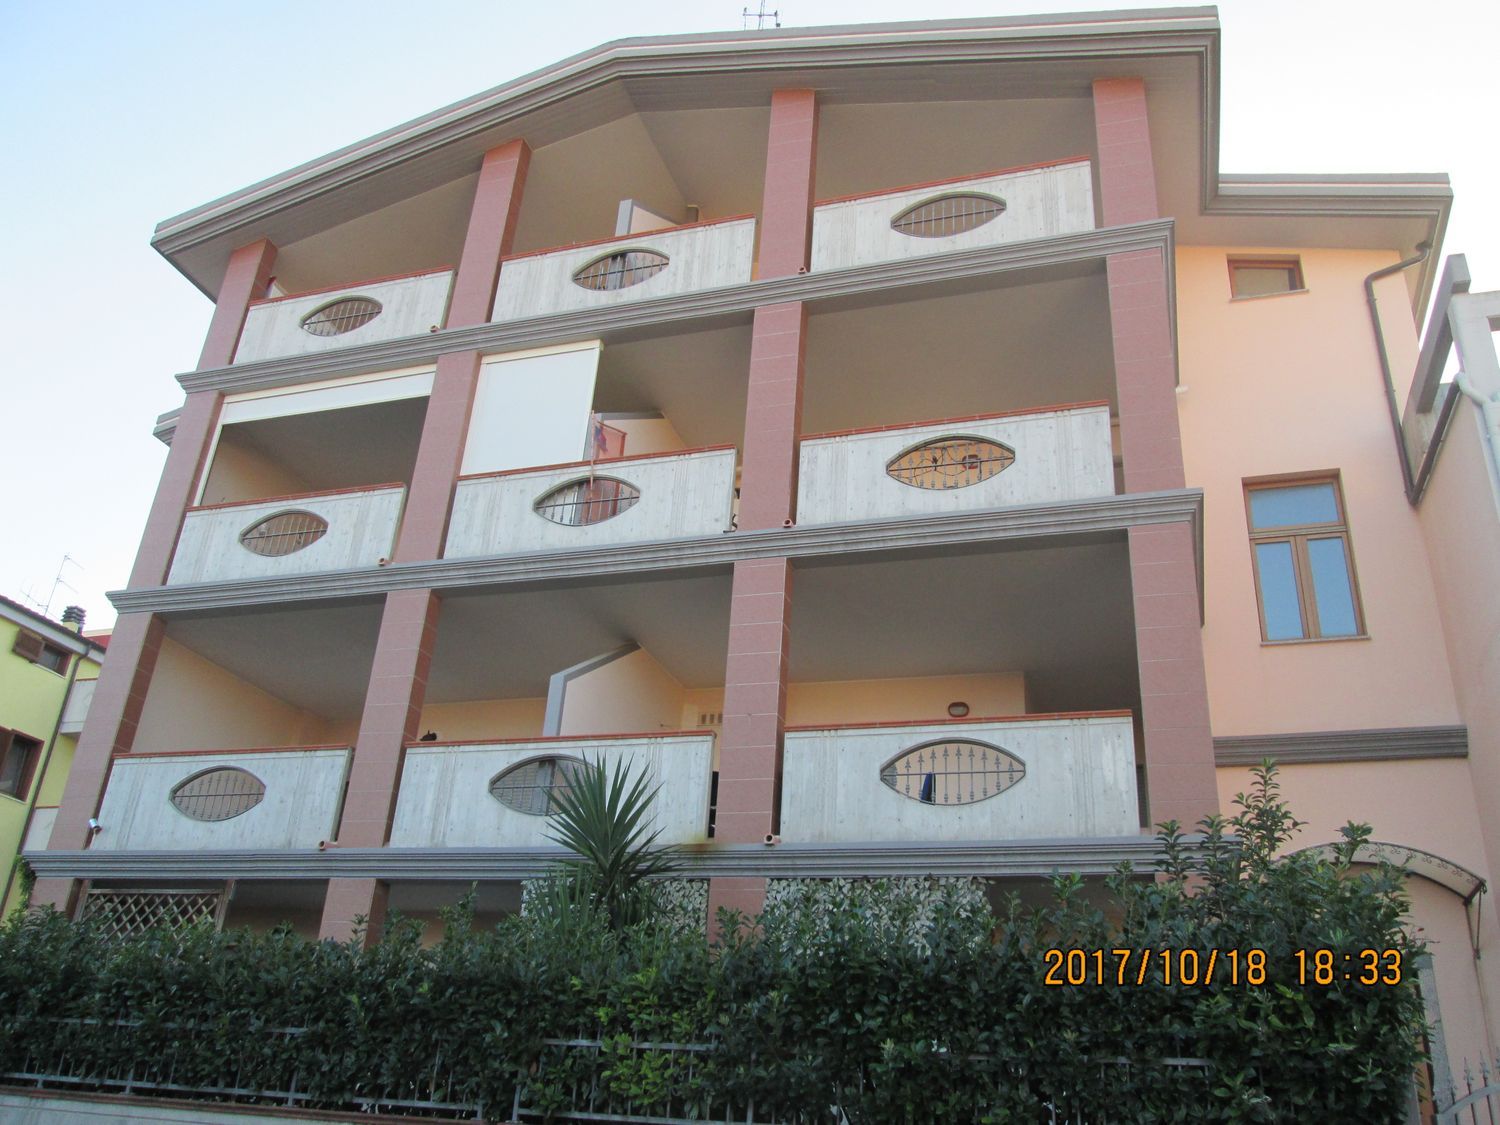 Duplex in vendita a Montesilvano, 3 locali, prezzo € 140.000 | PortaleAgenzieImmobiliari.it